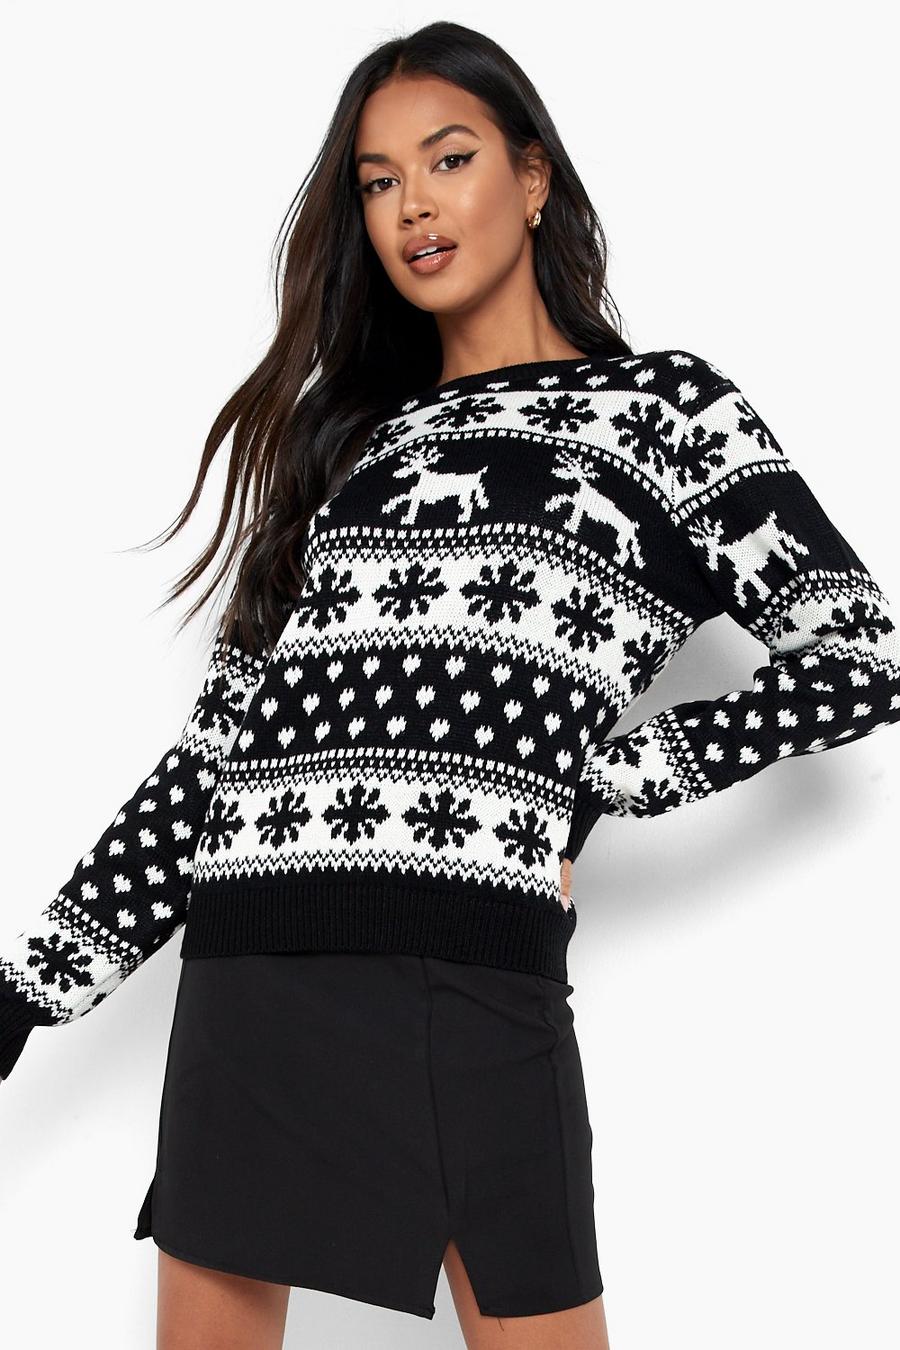 Weihnachtspullover mit Rentier und Schneeflocken, Black